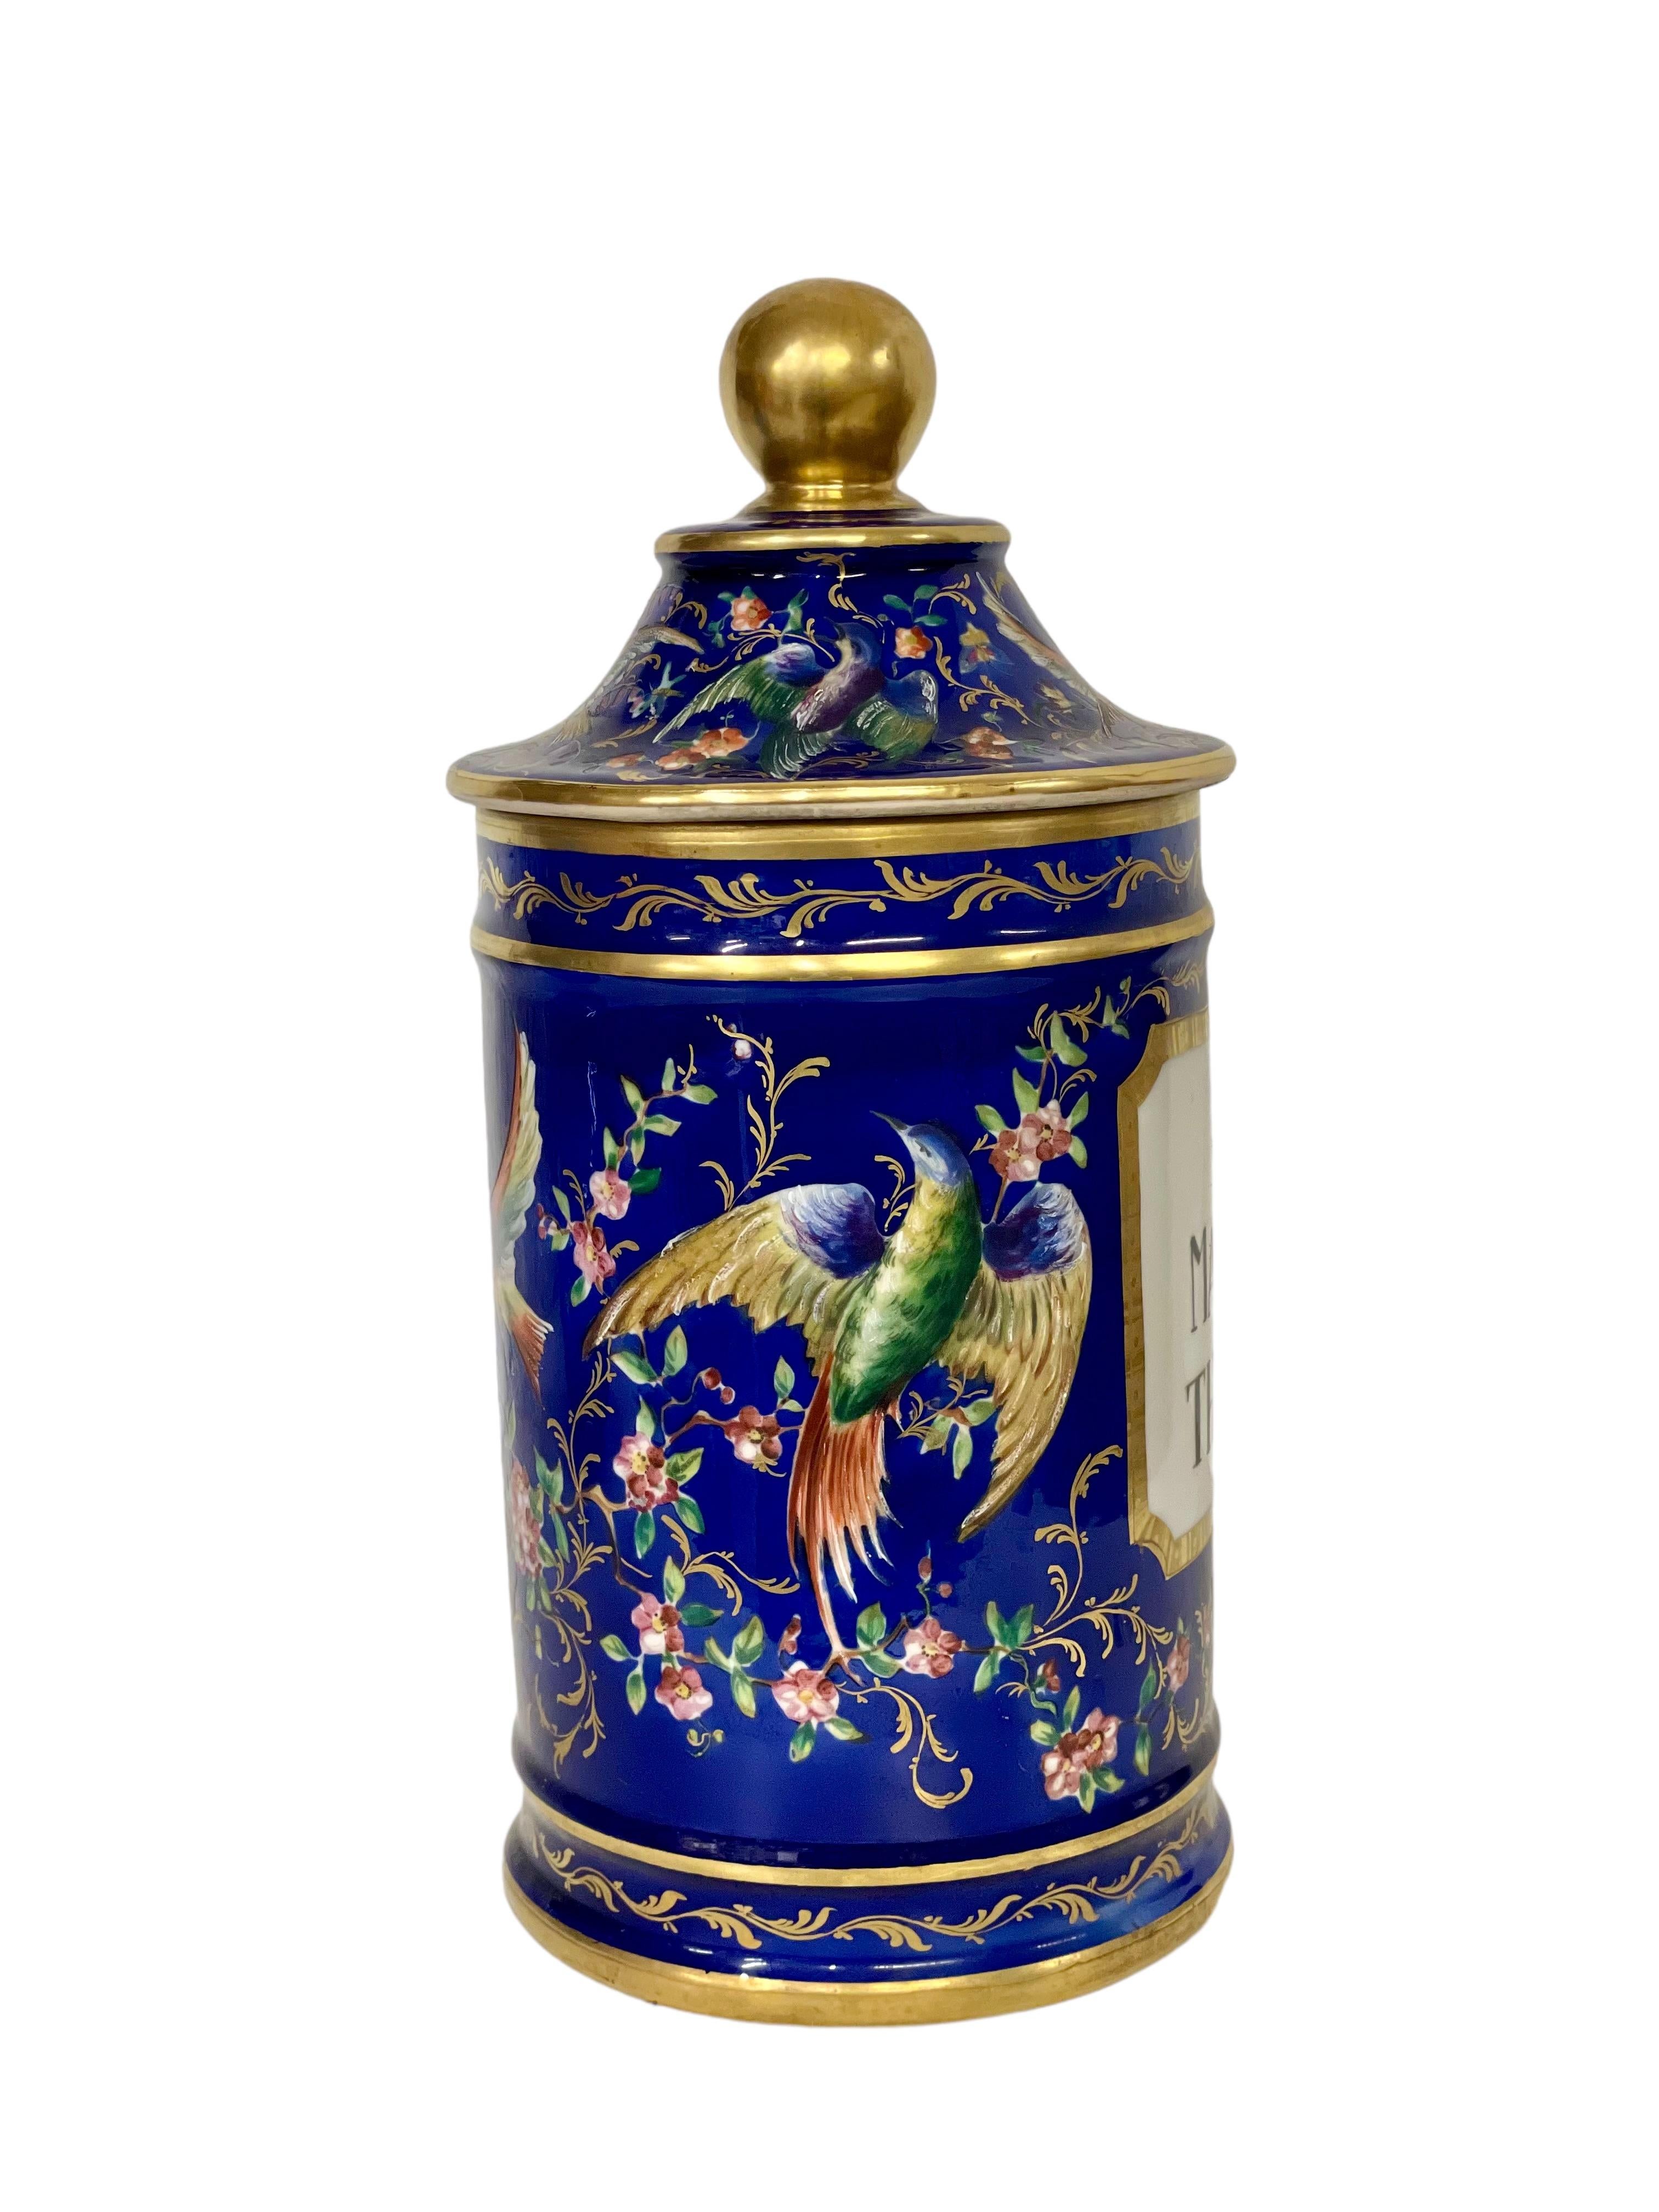 Magnifique pot d'apothicaire à couvercle en porcelaine d'époque Empire, datant du 19e siècle. Exubérément décoré d'un vibrant motif émaillé d'oiseaux et de papillons exotiques sur un fond bleu cobalt, il est généreusement rehaussé d'ornements dorés.